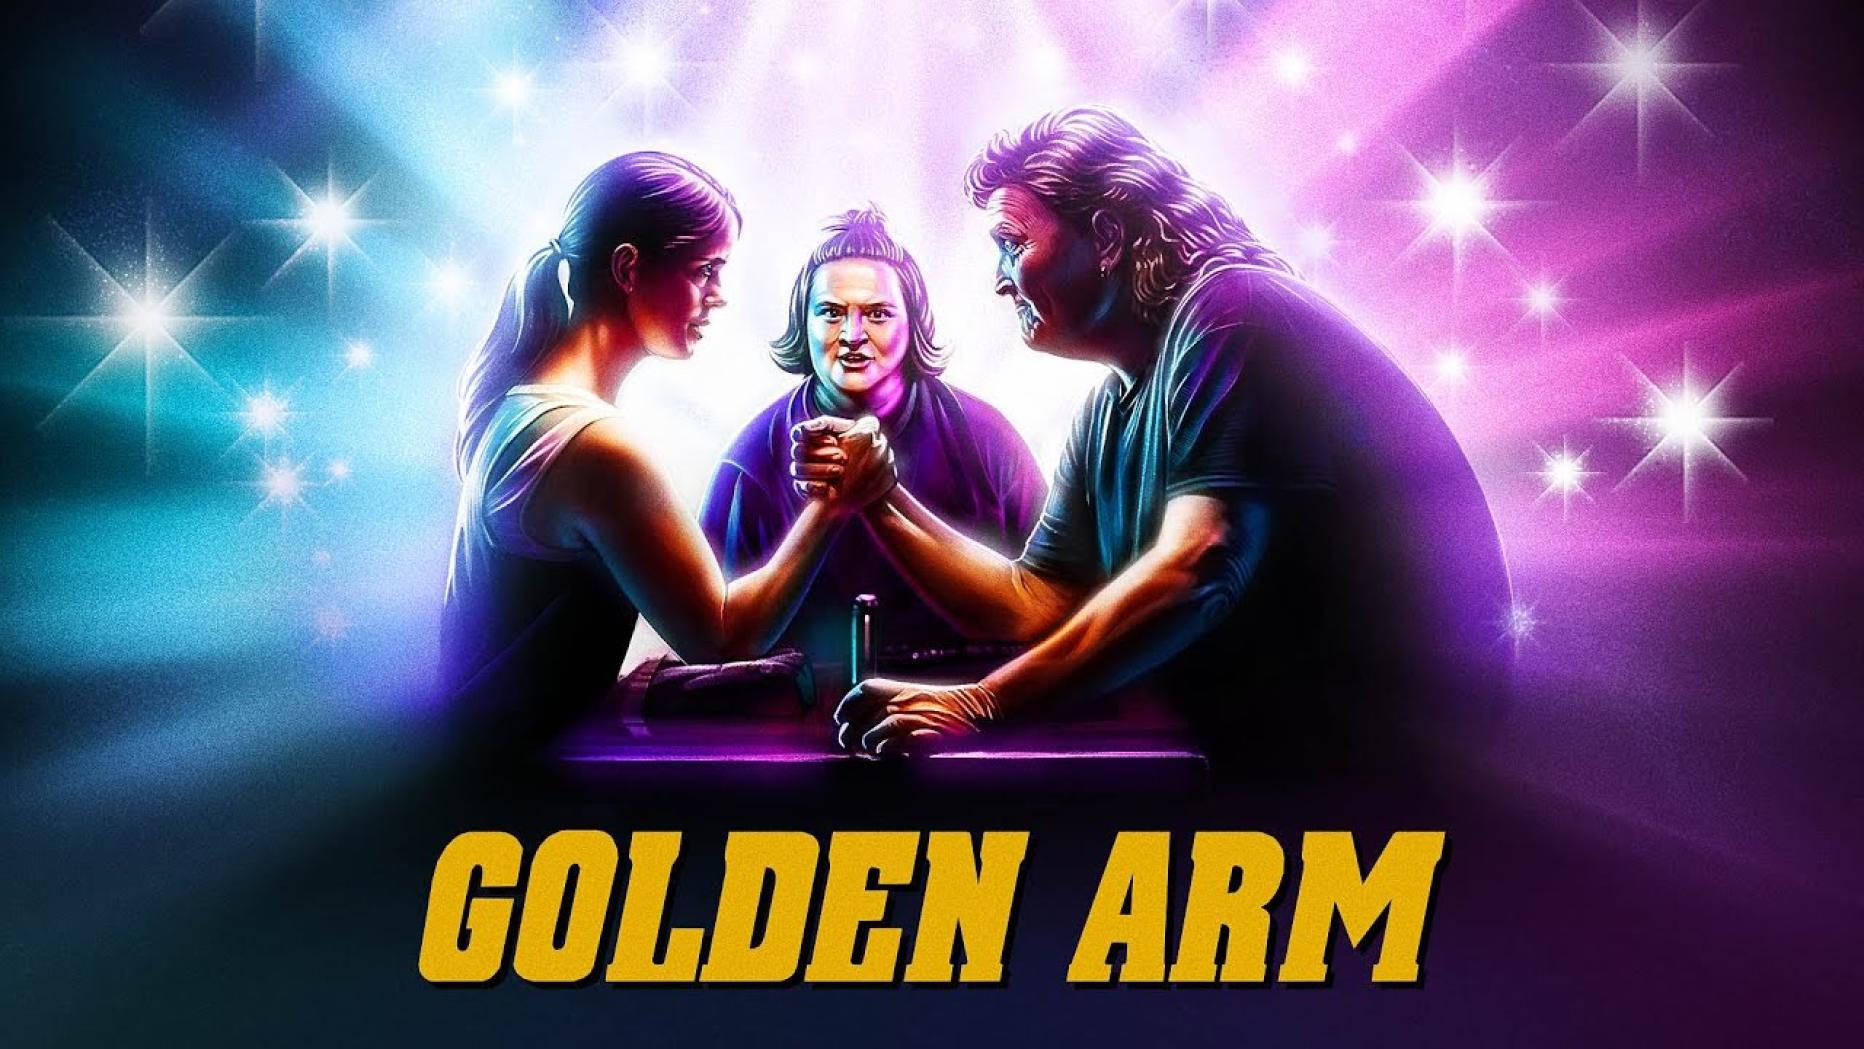 Golds arm. Golden Arm.